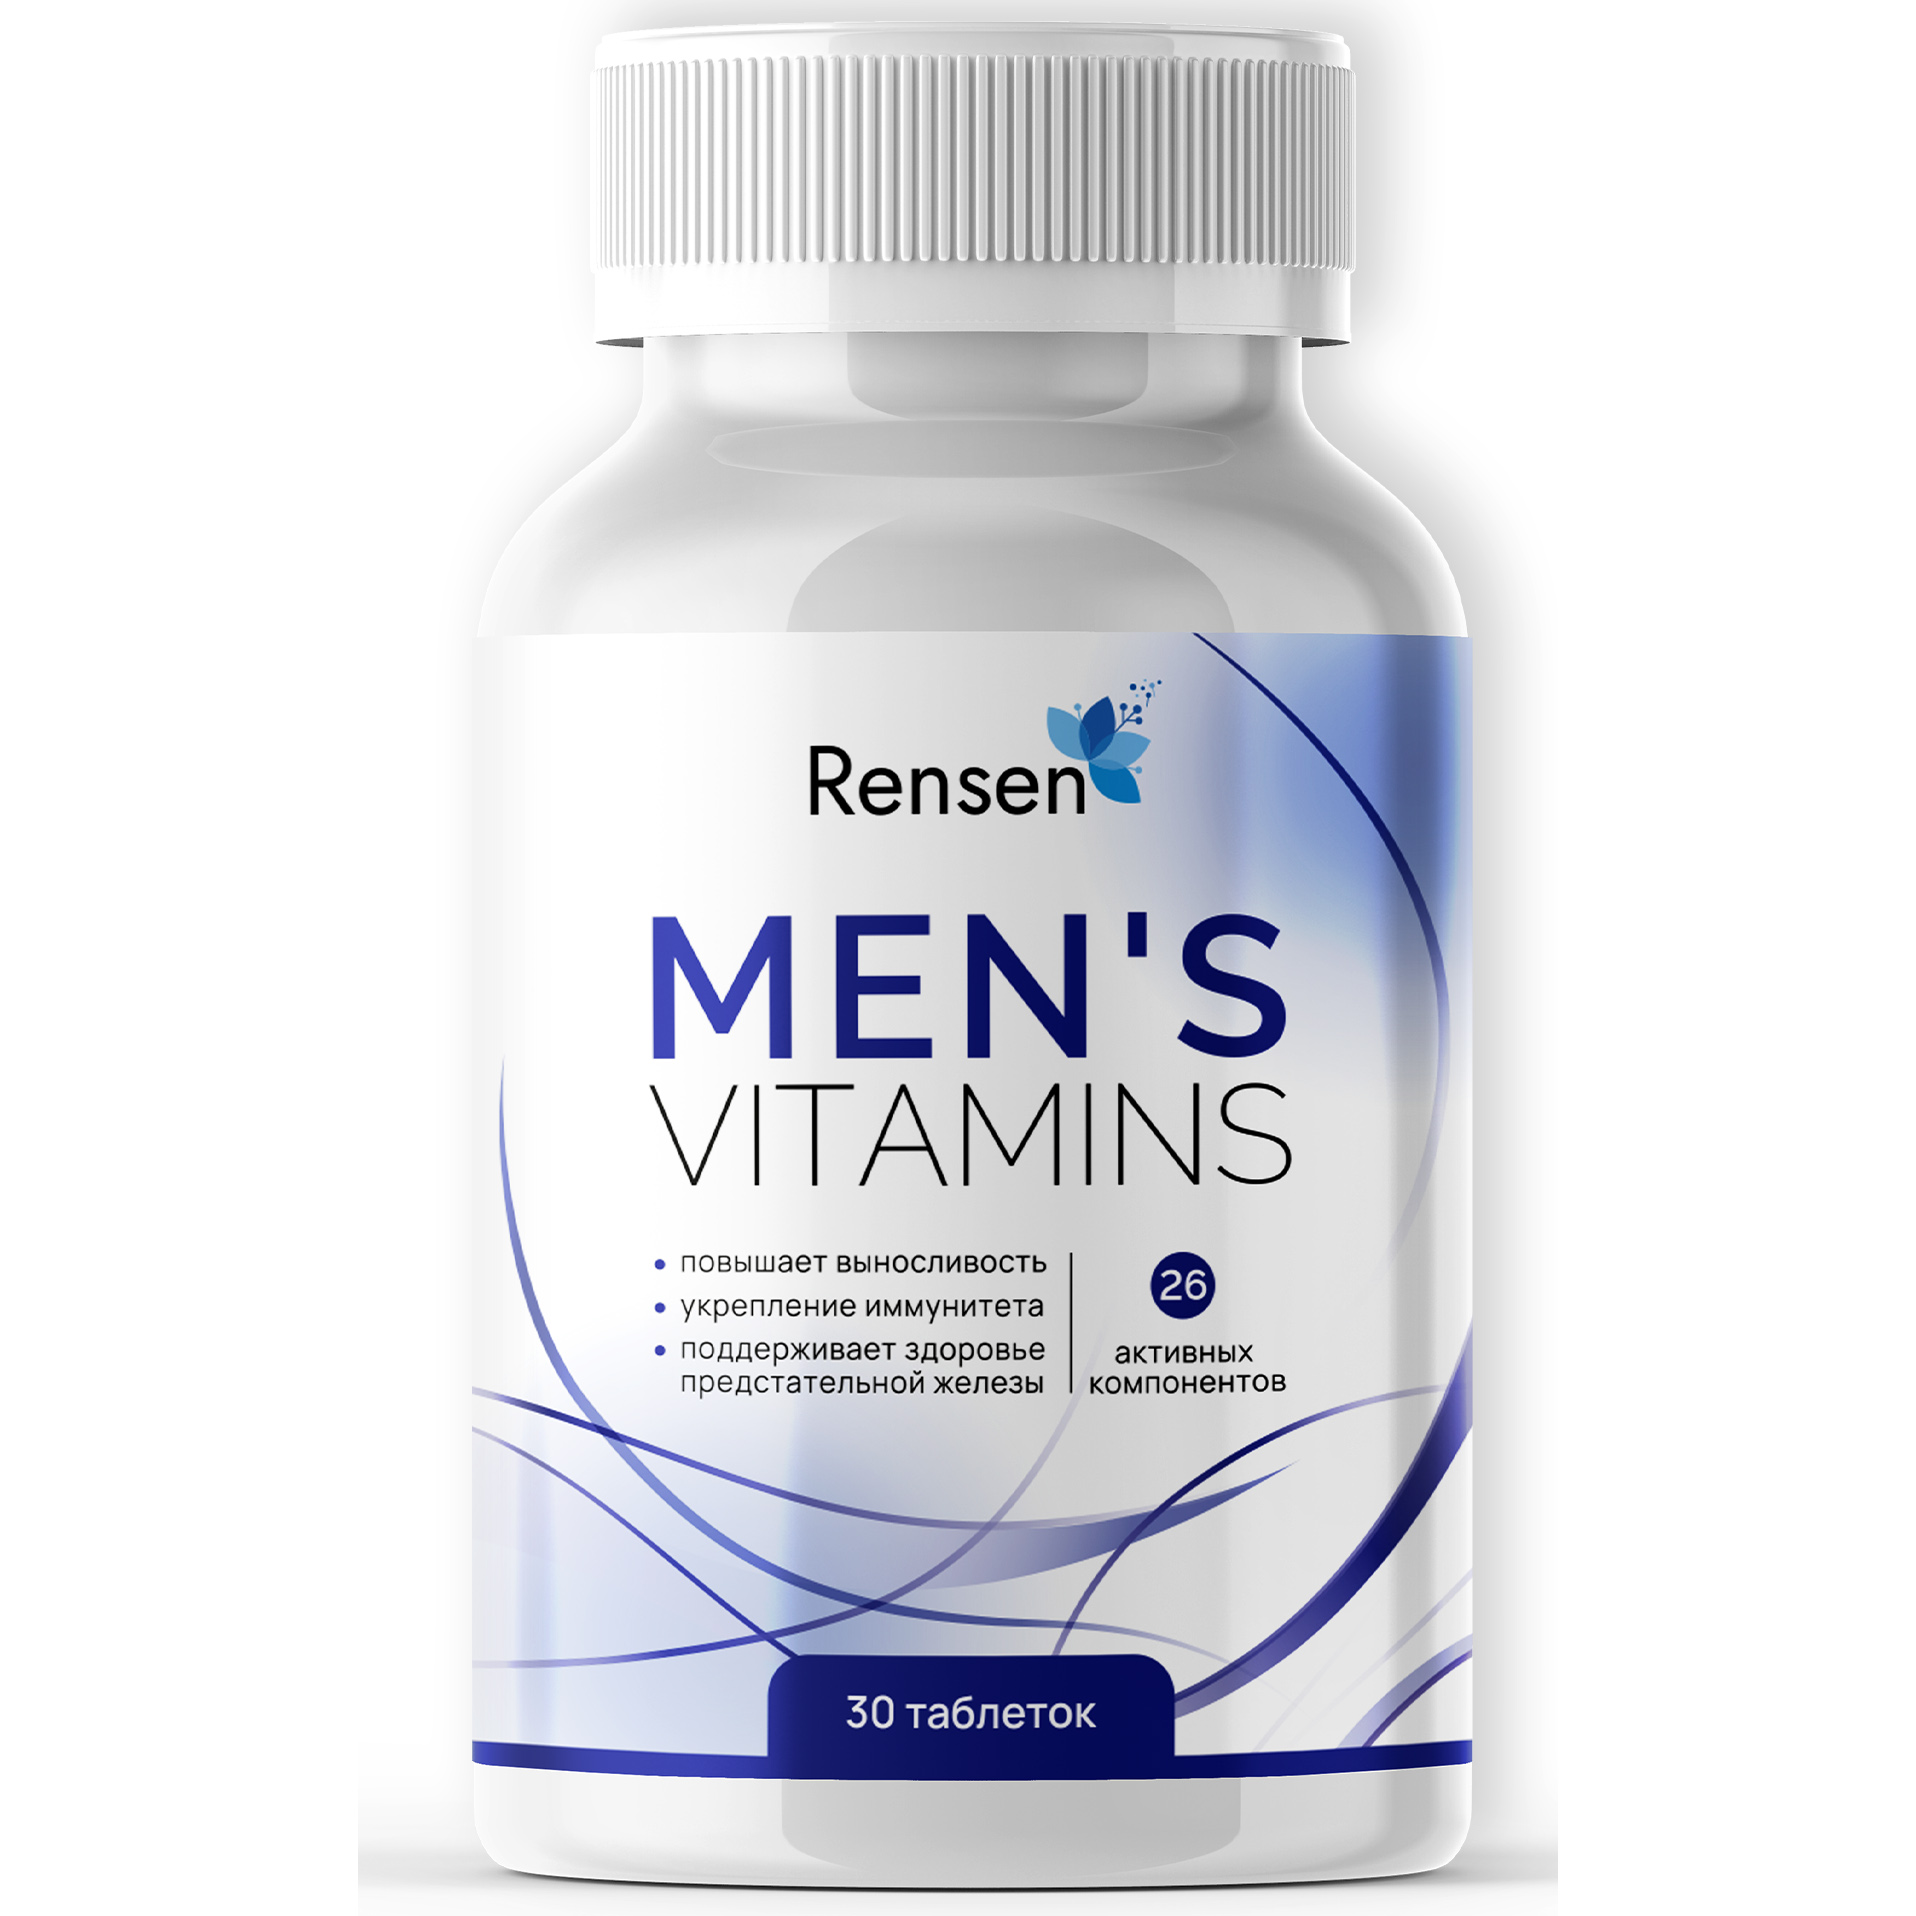 Рейтинг мужских витаминов